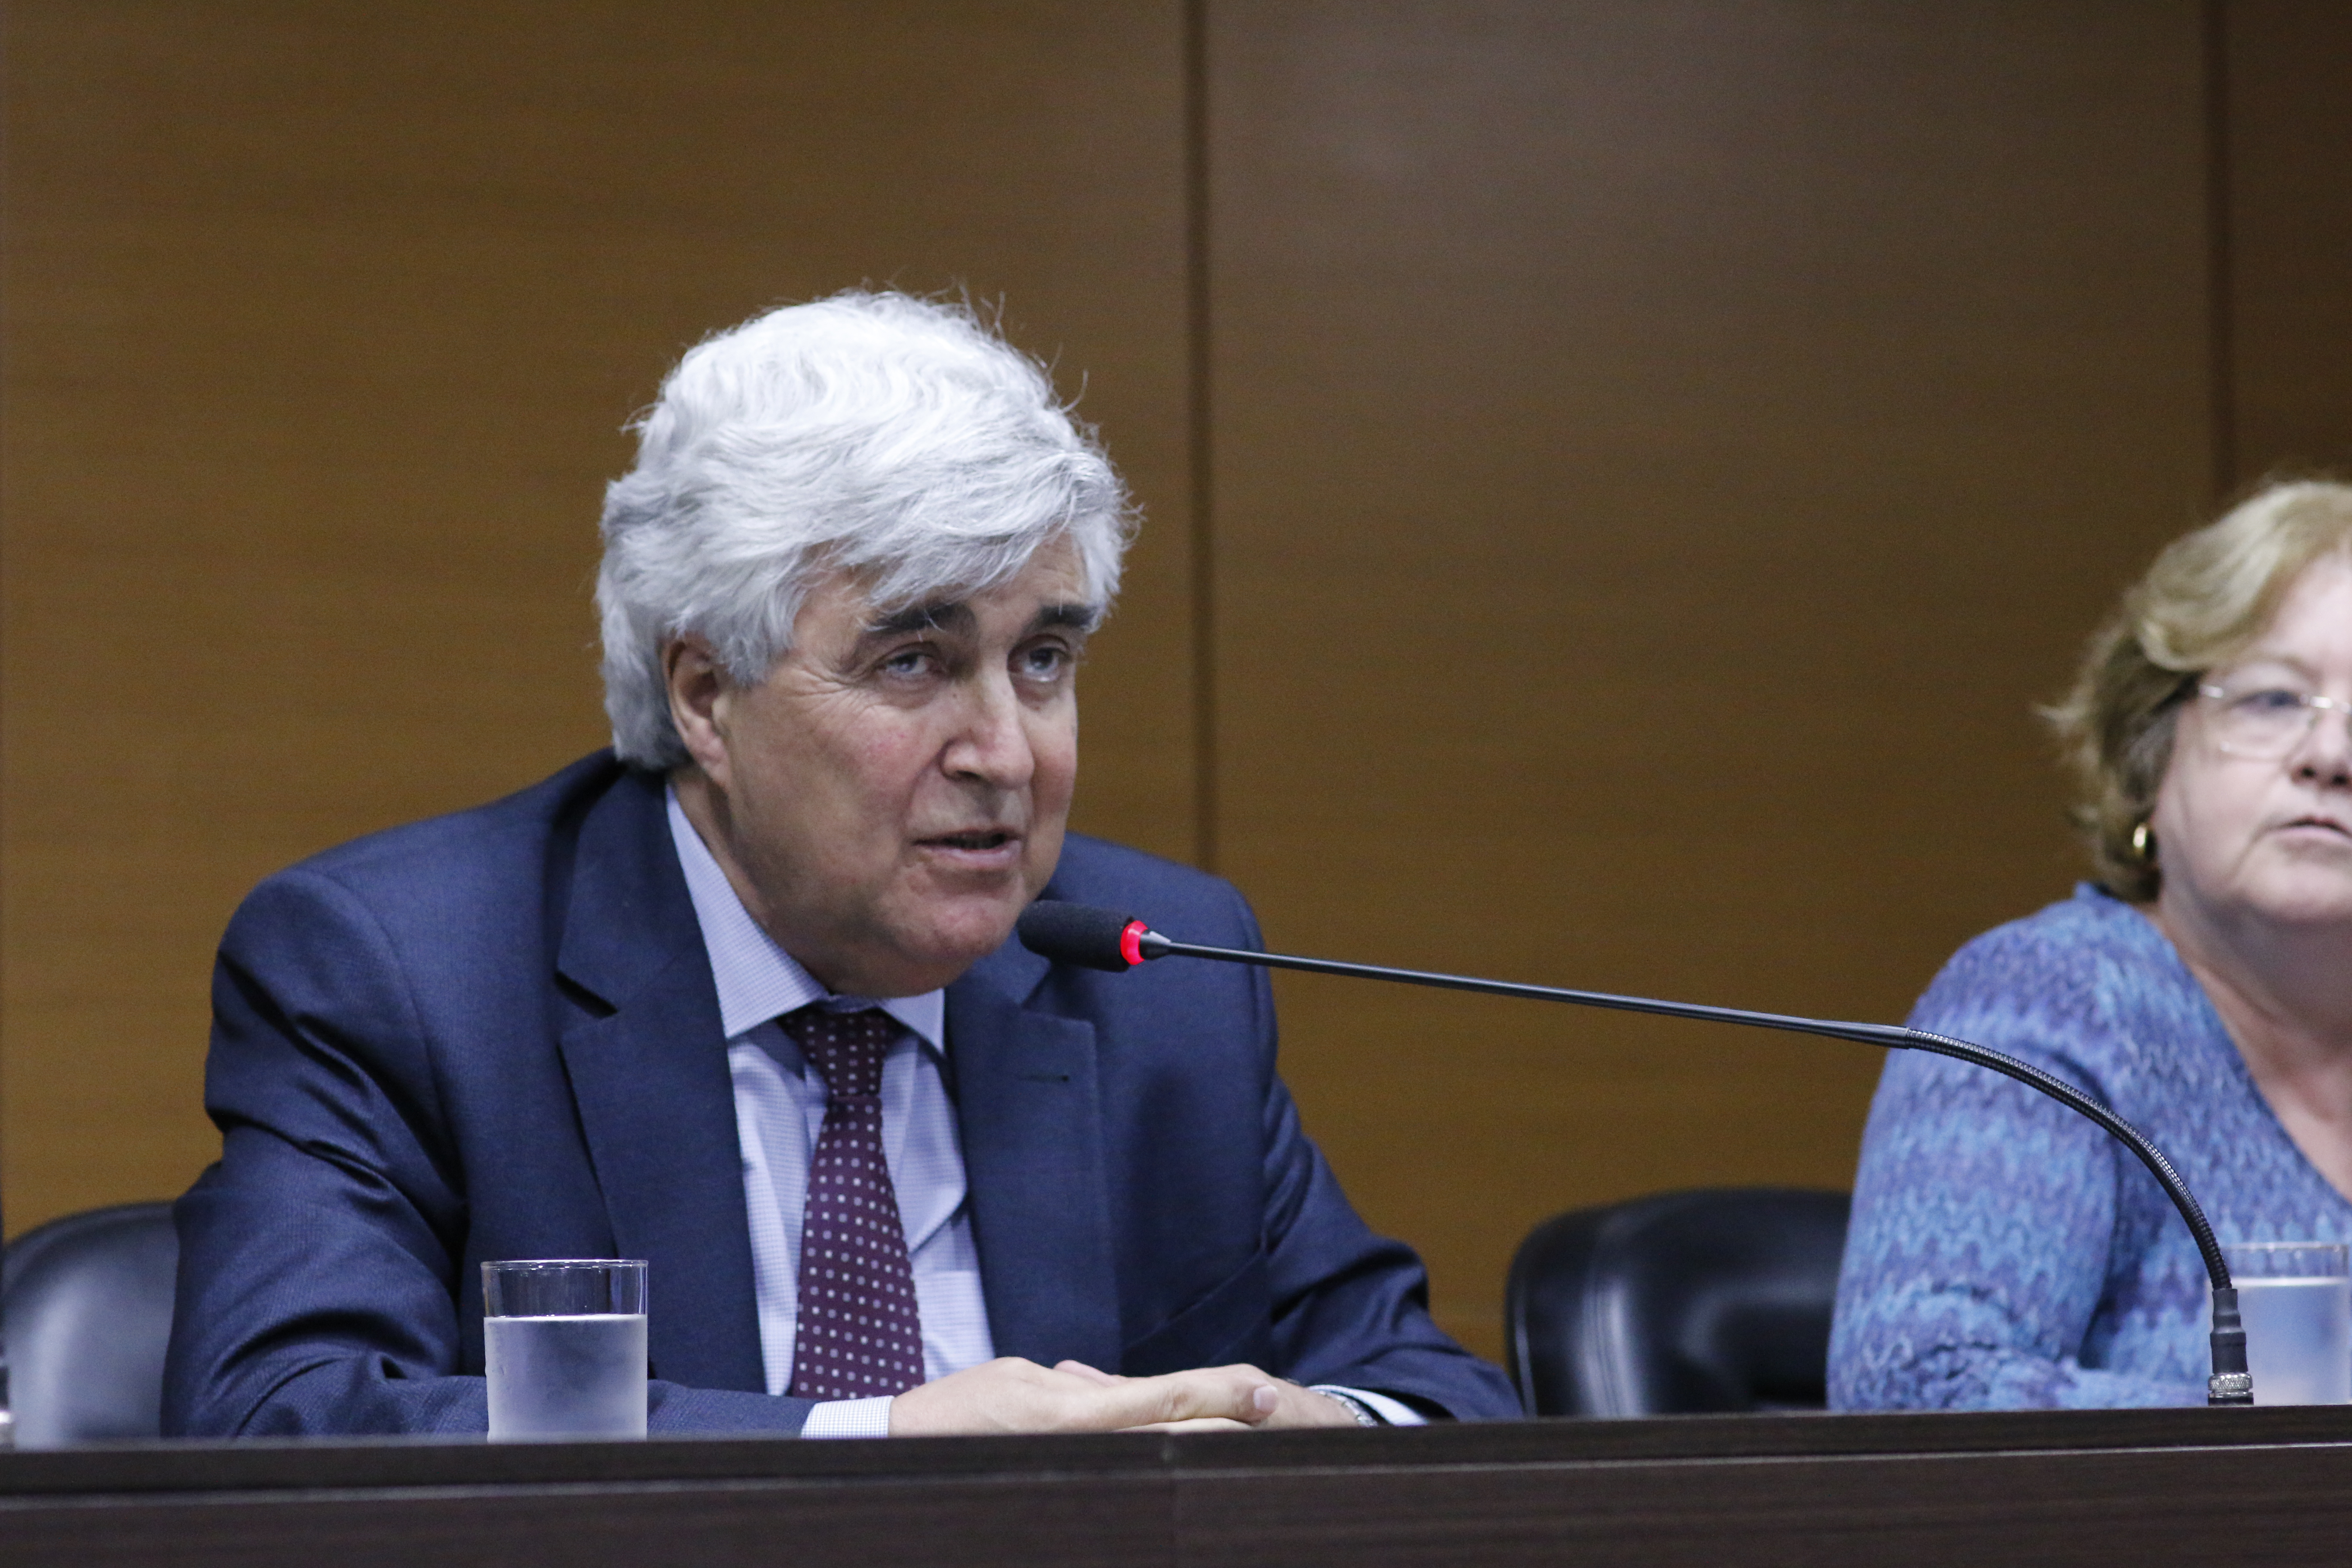 Abílio Baeta Neves, presidente de la Capes, le presentó al público el proyecto de creación de un fondo privado para el financiamiento de investigación